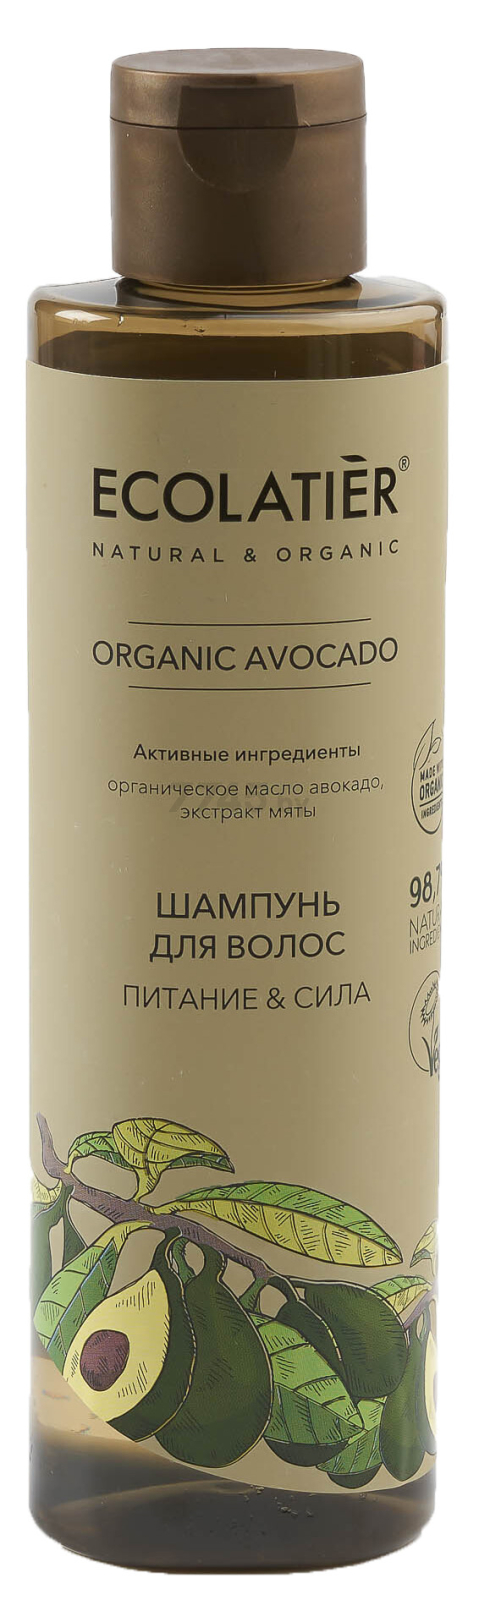 Шампунь ECOLATIER Organic Avocado Питание и Сила 250 мл (4620046172620)